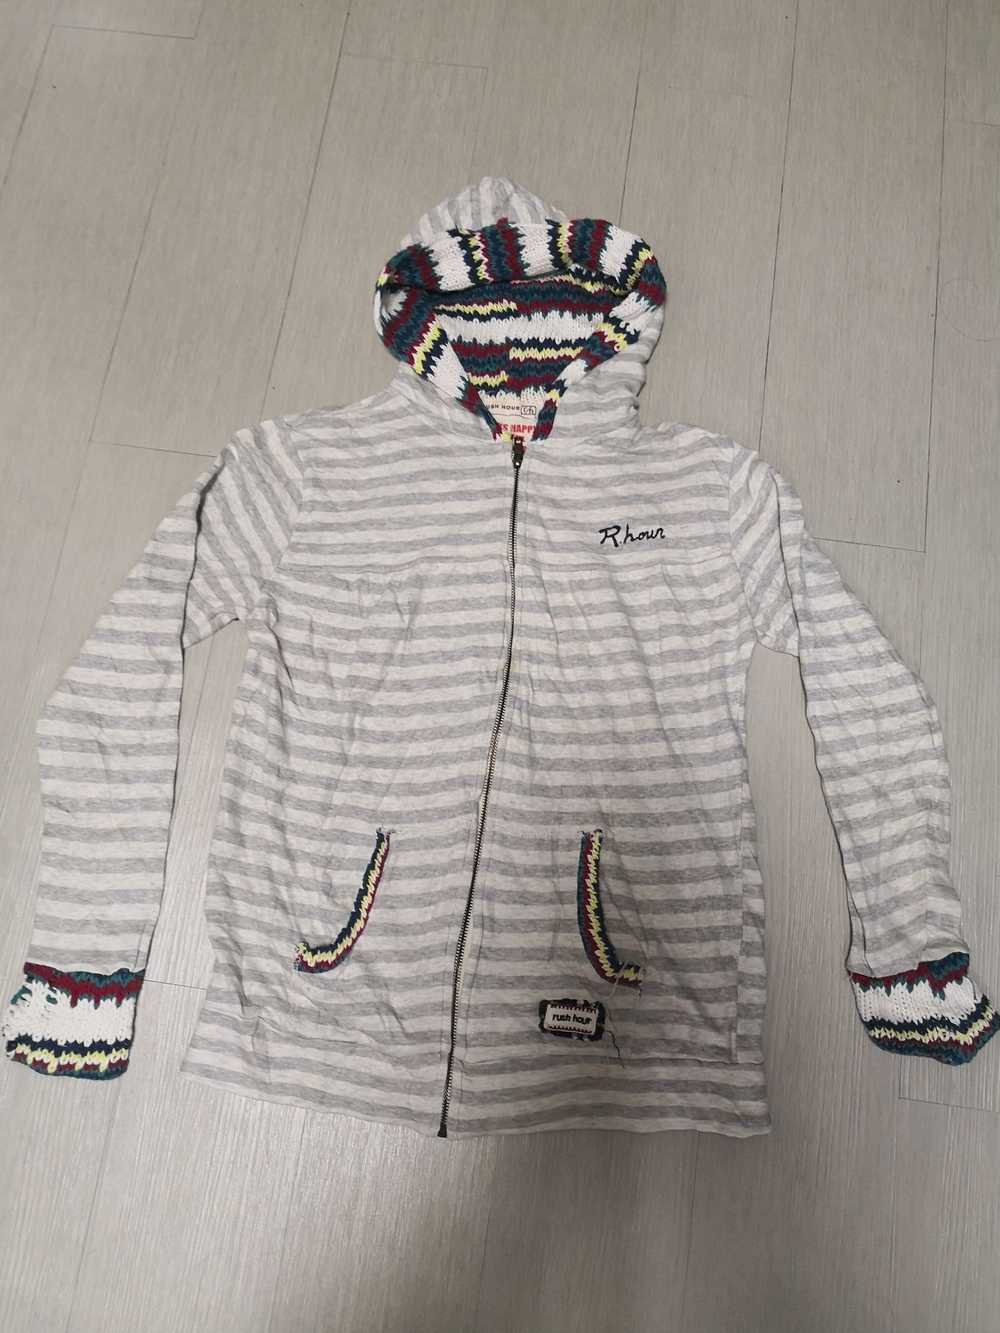 Japanese Brand Rush hour hoodie - image 1